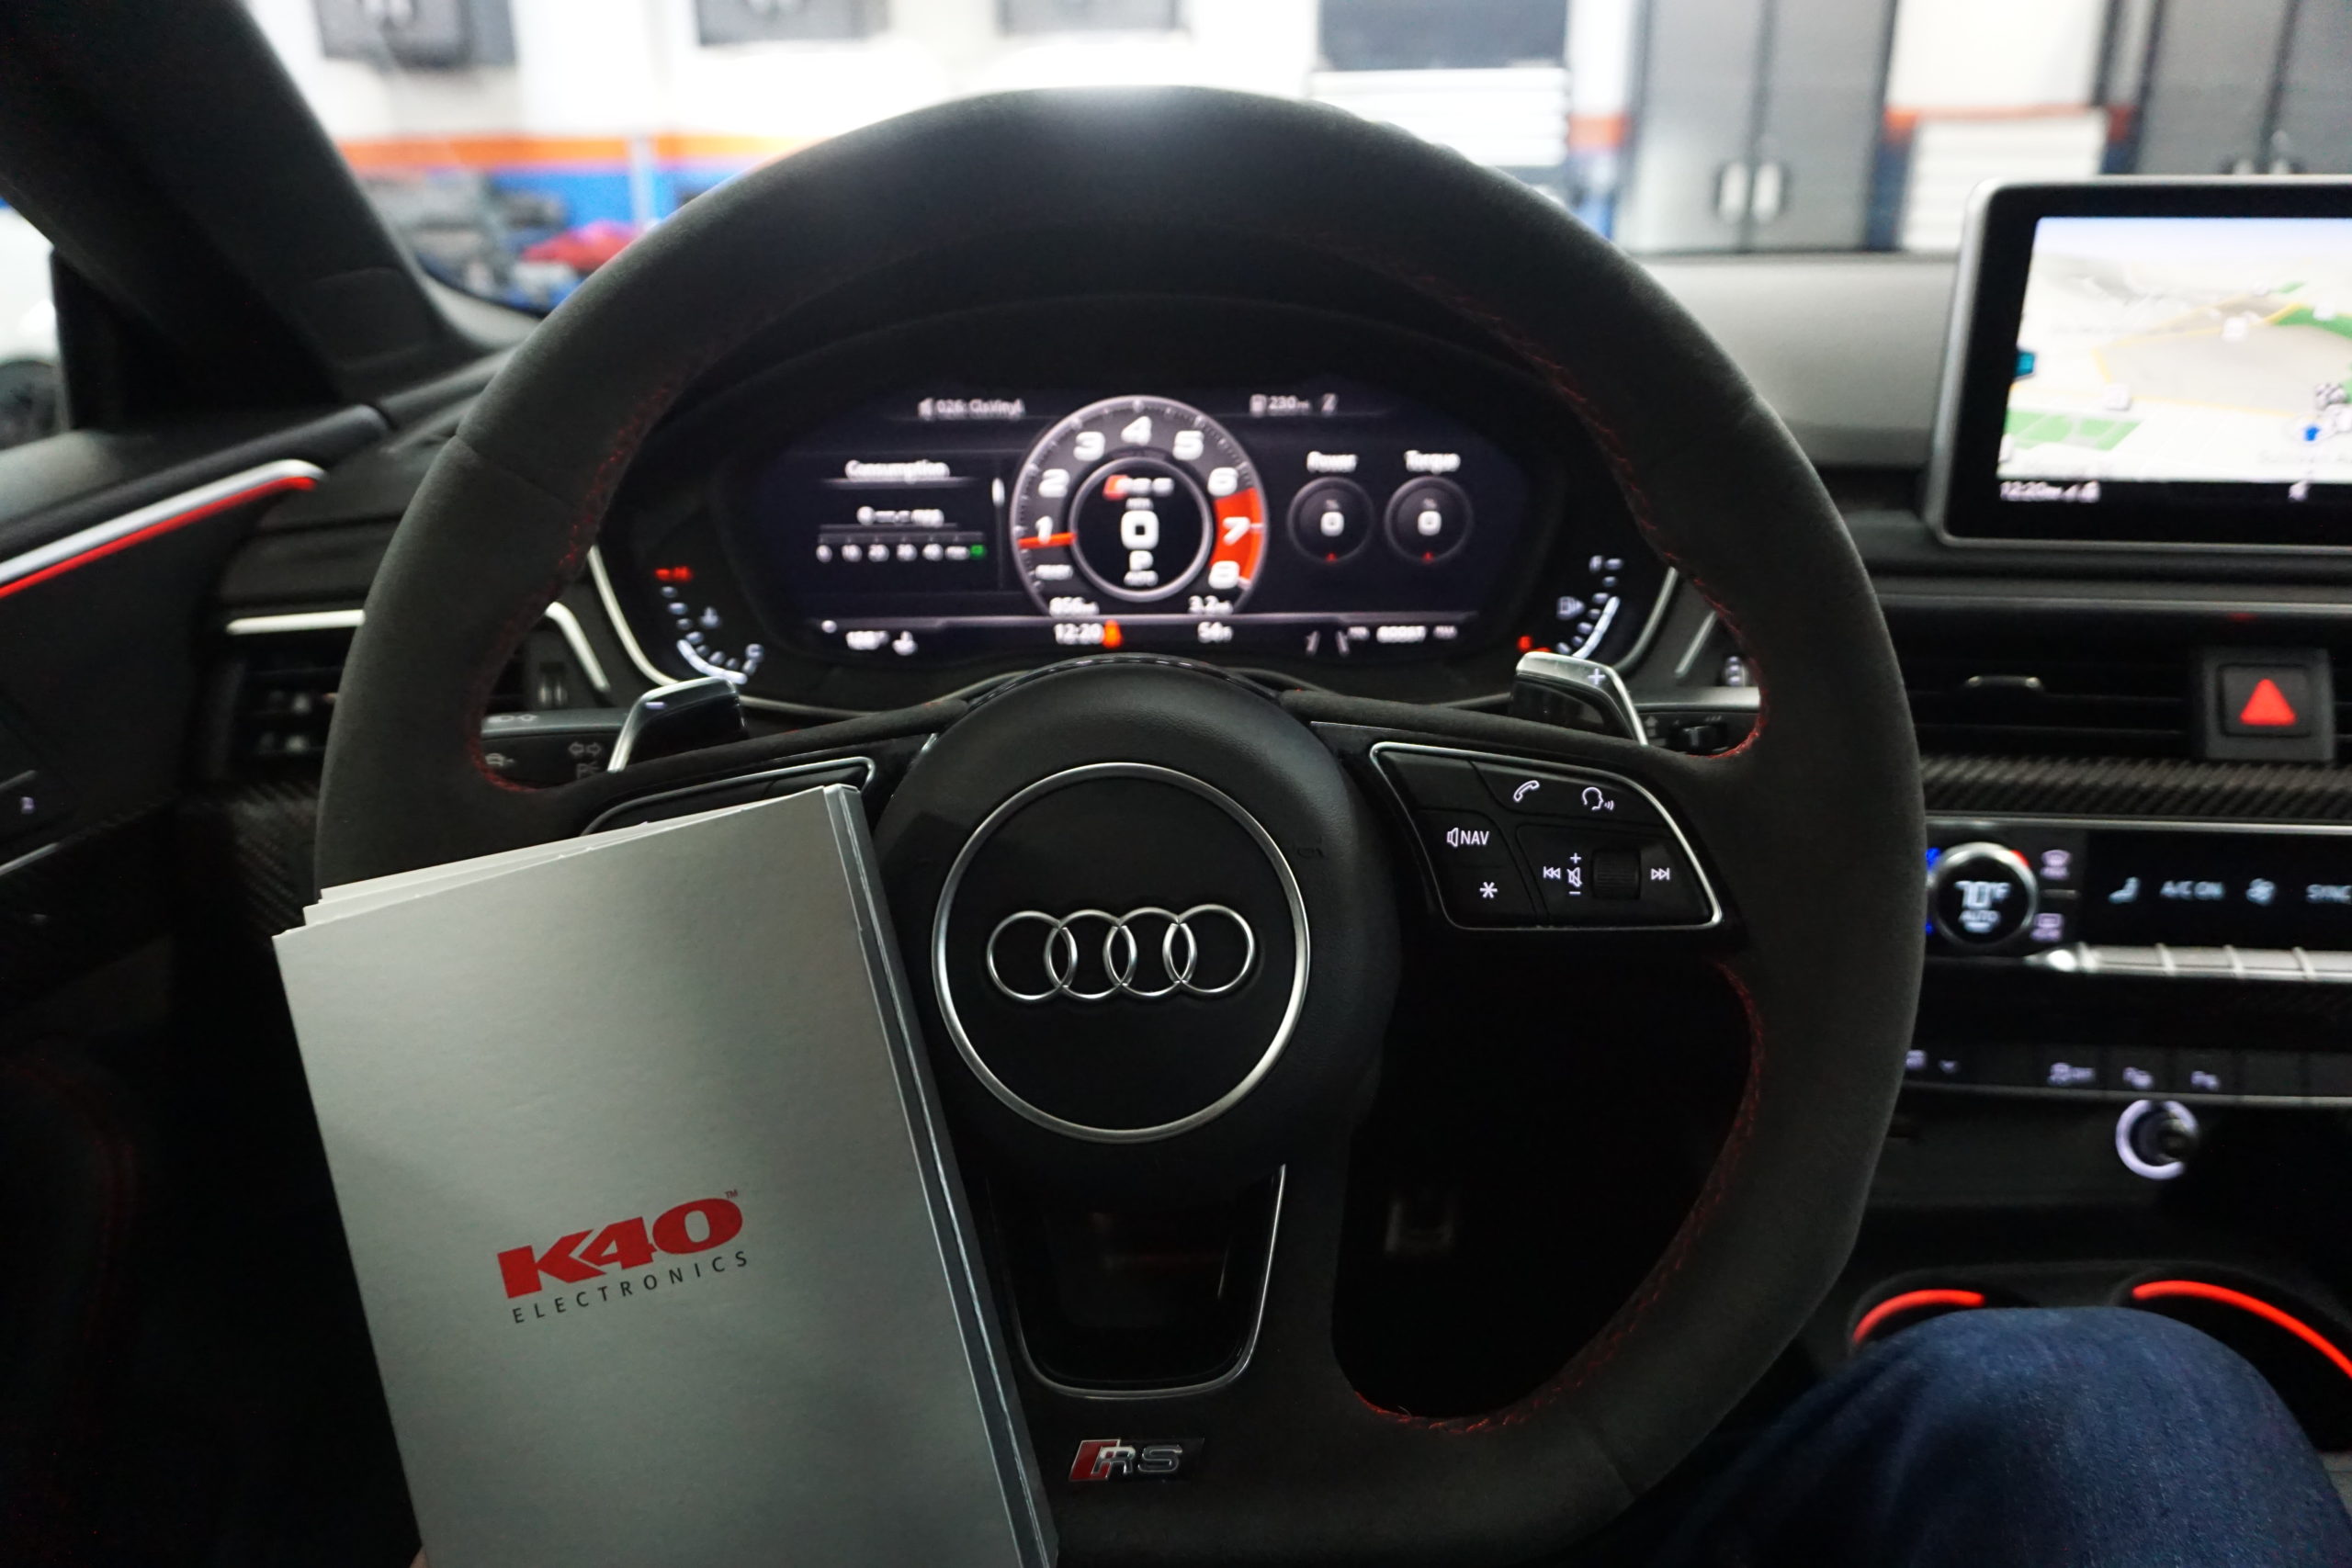 K40 Custom Radar & Laser System on a 2019 Audi RS5 in Westminster, MD